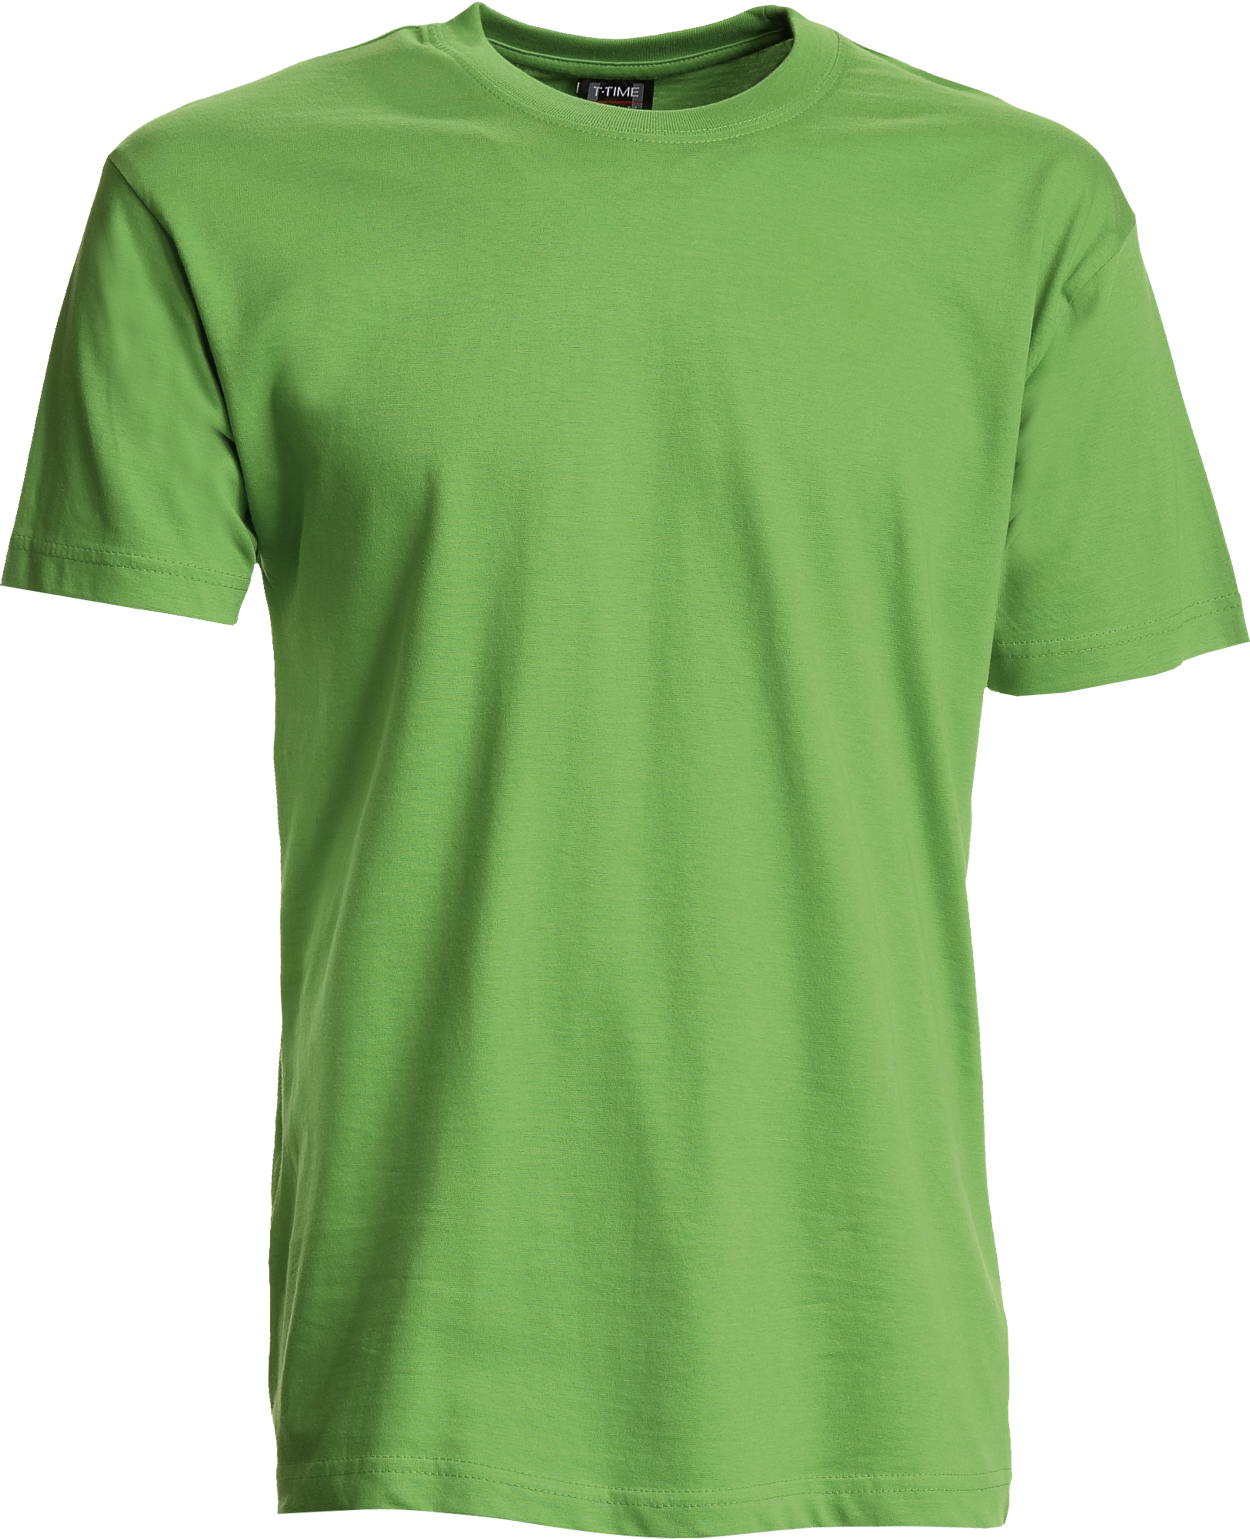 Apple Unisex T-shirt, Basic (8150101)